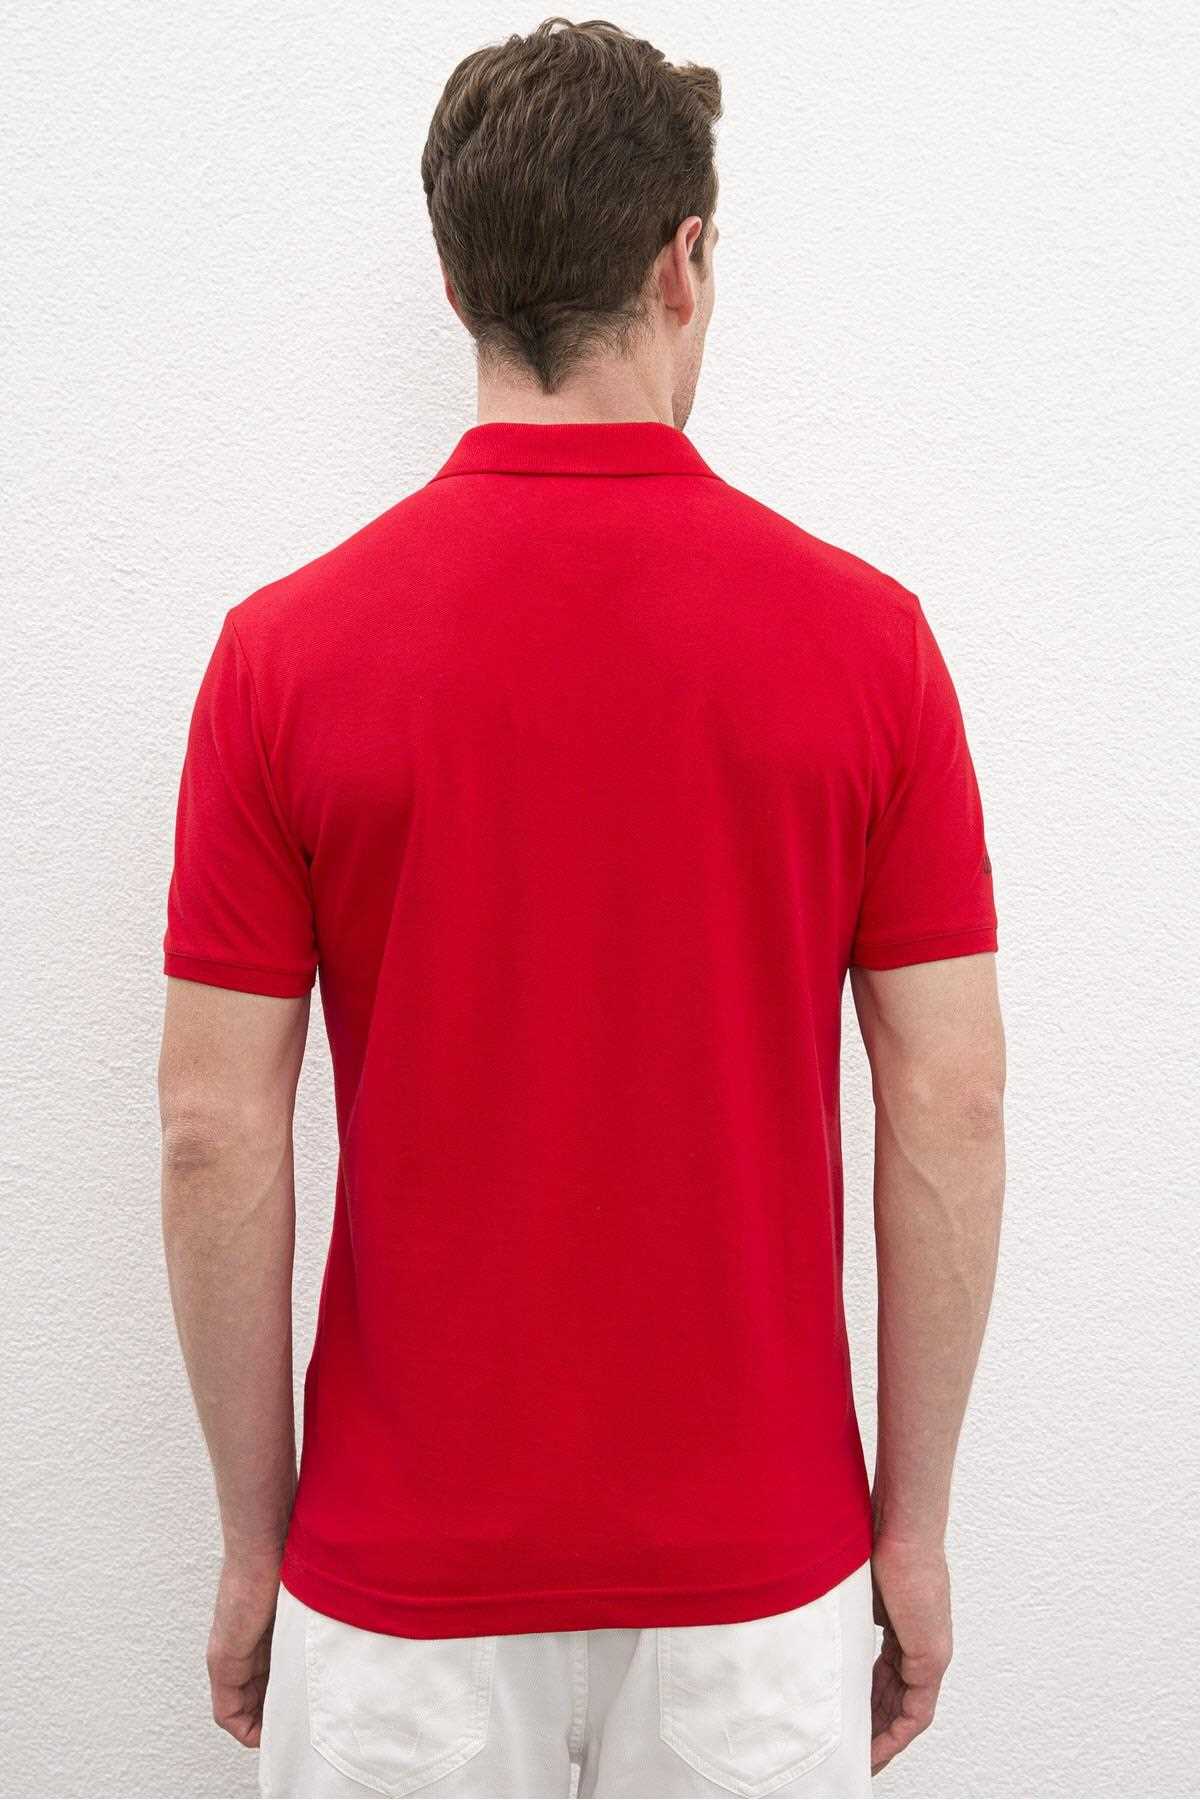 تی شرت زمستانی مردانه یو اس پولو رنگ قرمز ty42422154